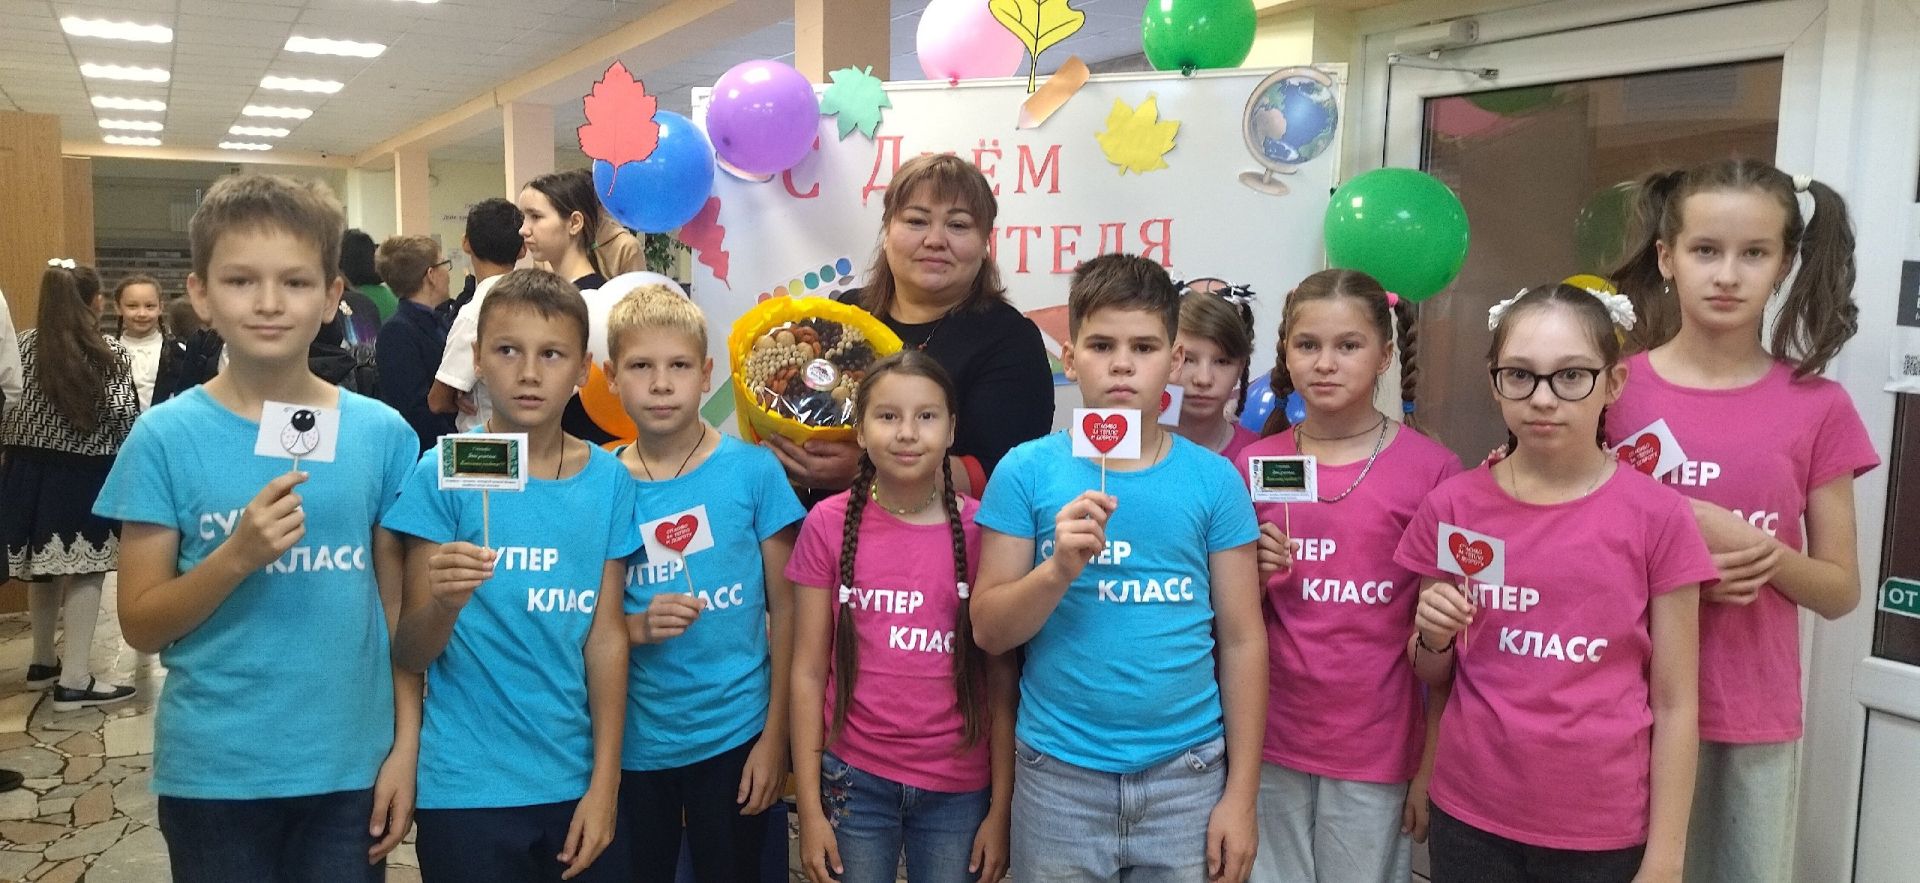 Учащиеся камполянской школы № 2 поздравили учителей с профессиональным праздником